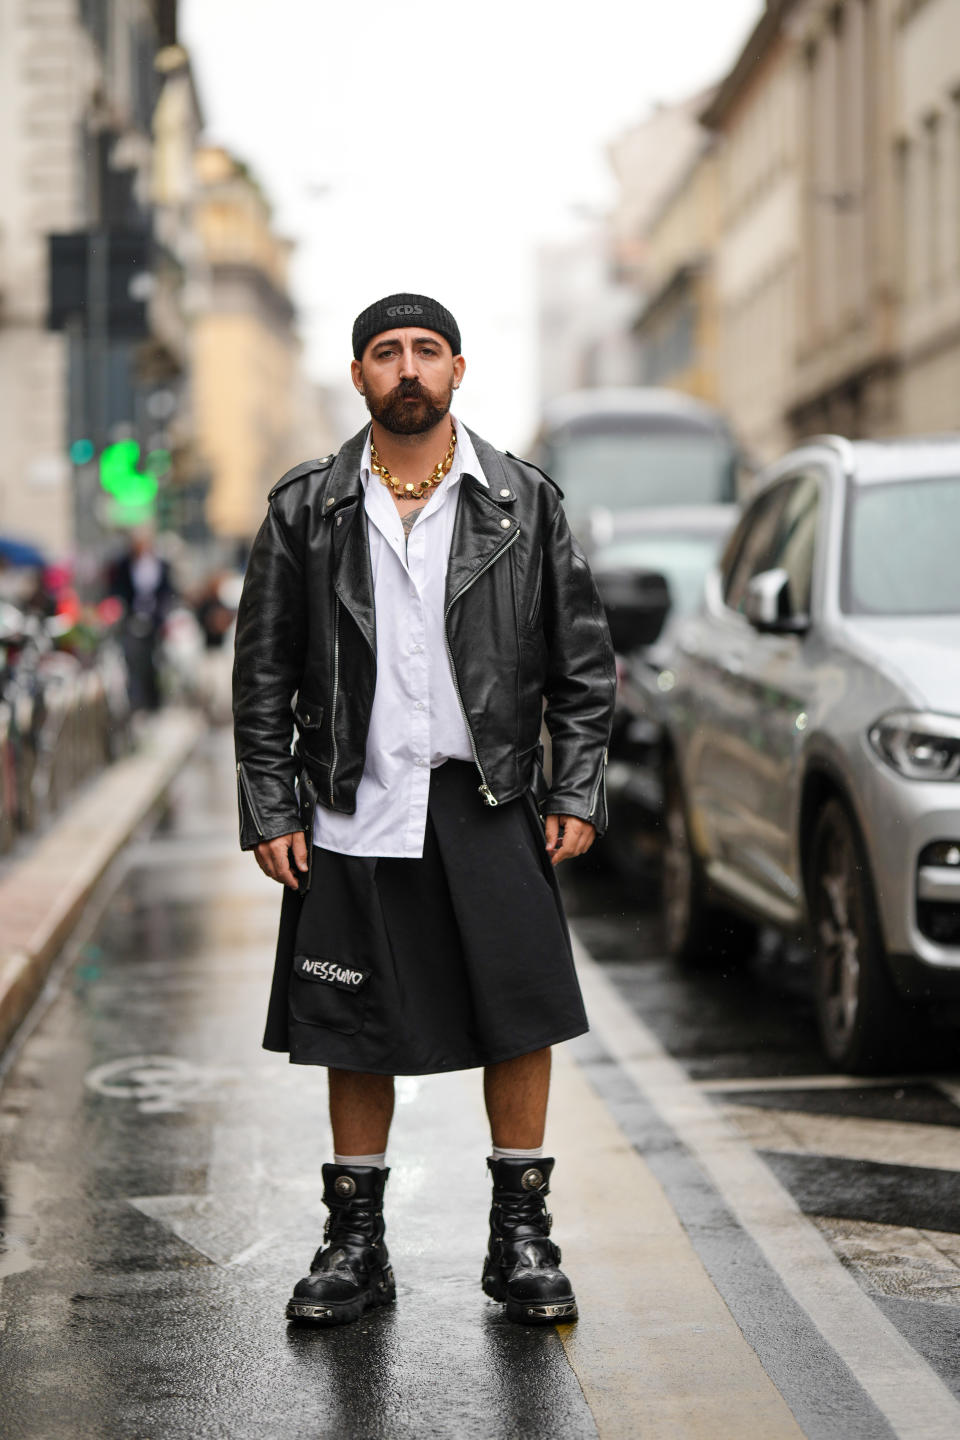 El street style en las grandes capitales de la moda, como Milán, muestra frecuentemente hombres con falda que derrochan personalidad y estilo.  (Photo by Edward Berthelot/Getty Images)